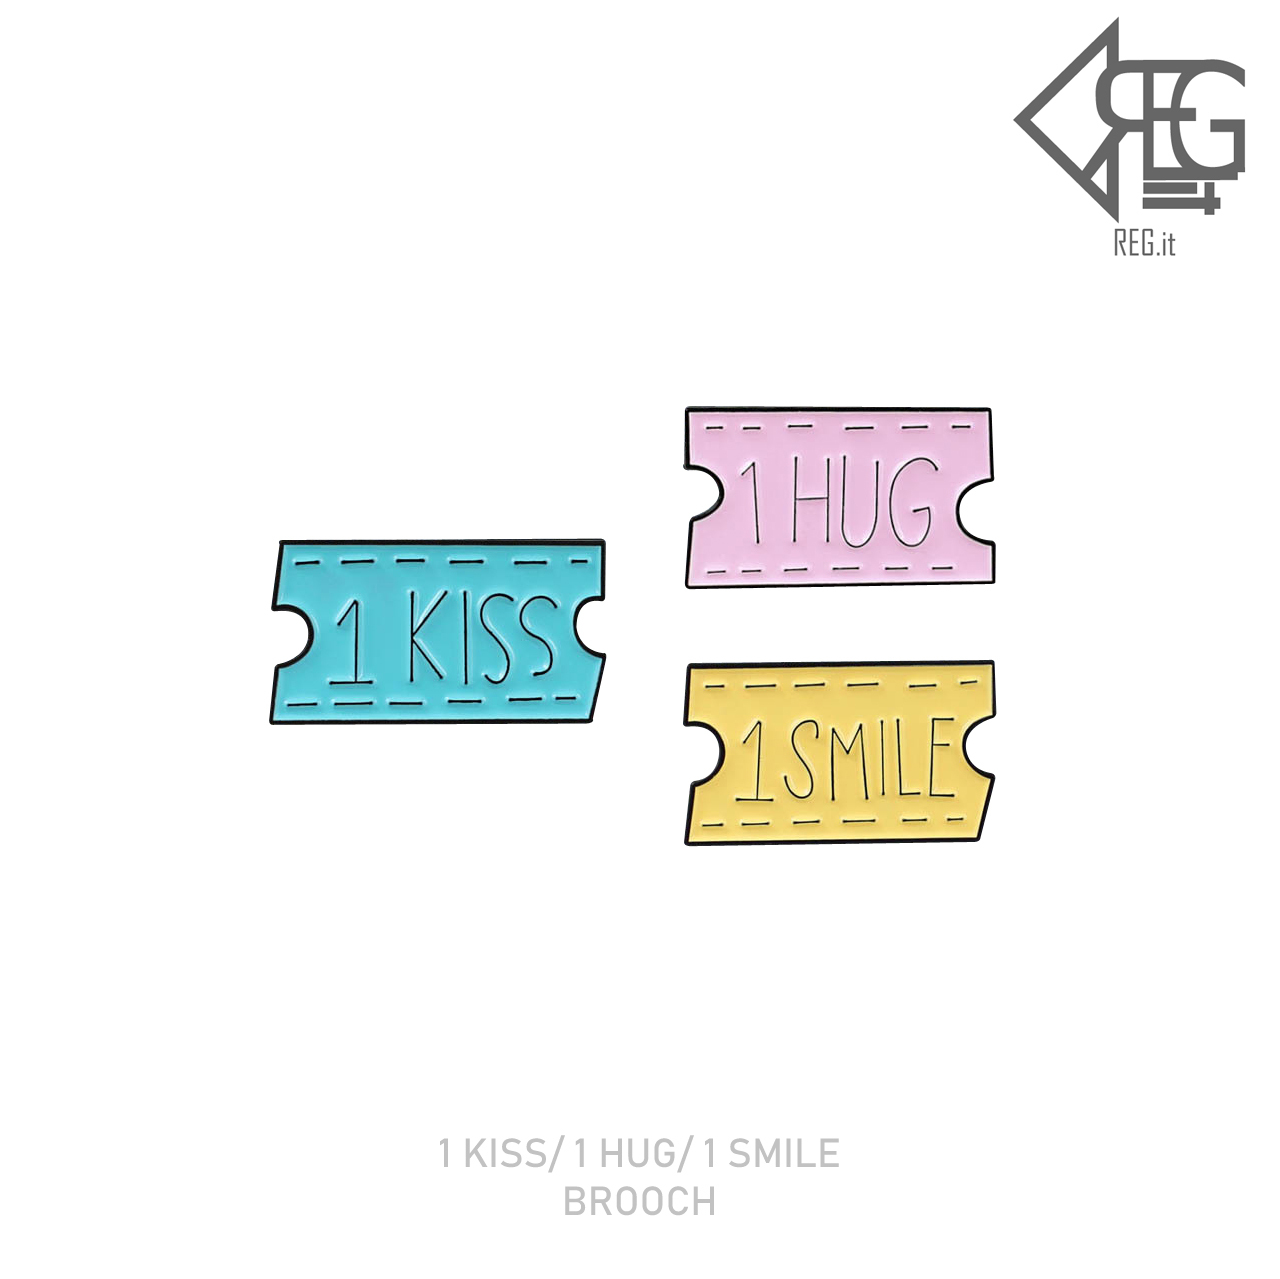 即納 1 Kiss 1 Hug 1 Smile Brooch 韓国ファッション ピンズ ピンバッジ アクセサリー ユニークピンバッジ かわいいピンバッジ 個性的なピンバッジ Regit